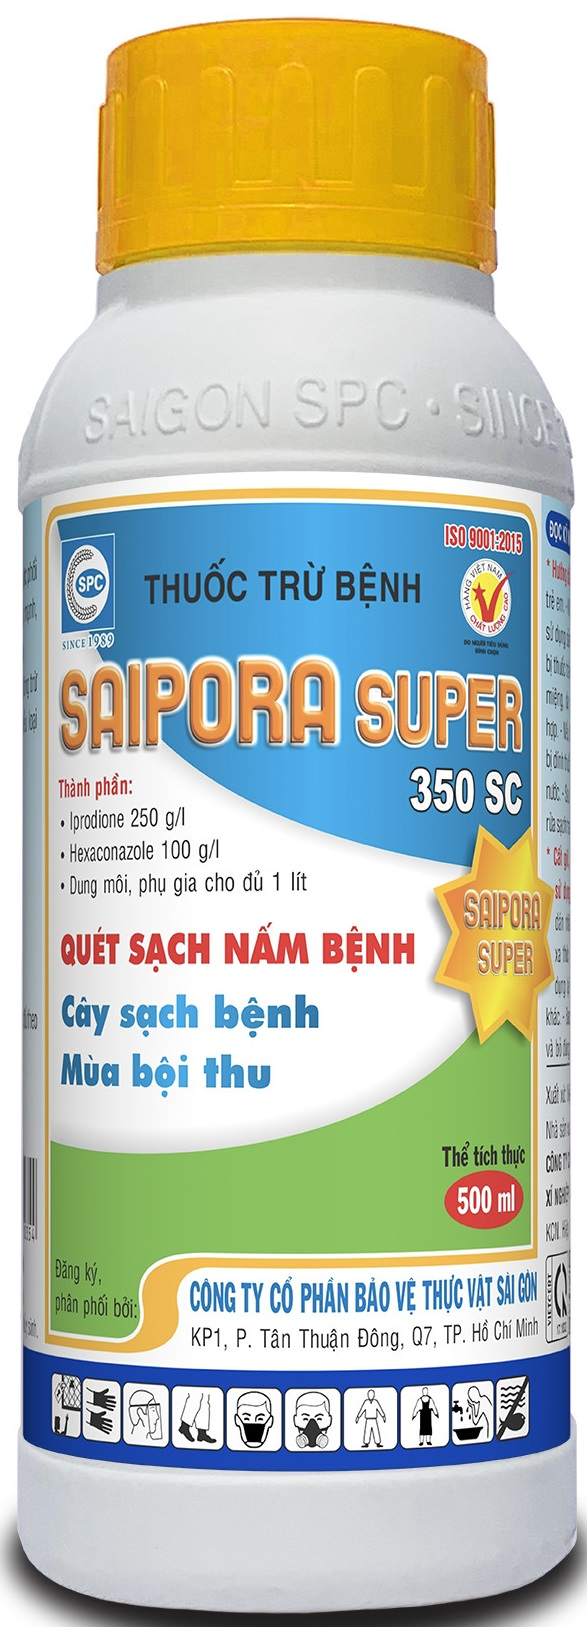 Saipora Super 350SC, thuốc trừ bệnh khô vằn hại lúa rất hiệu qủa